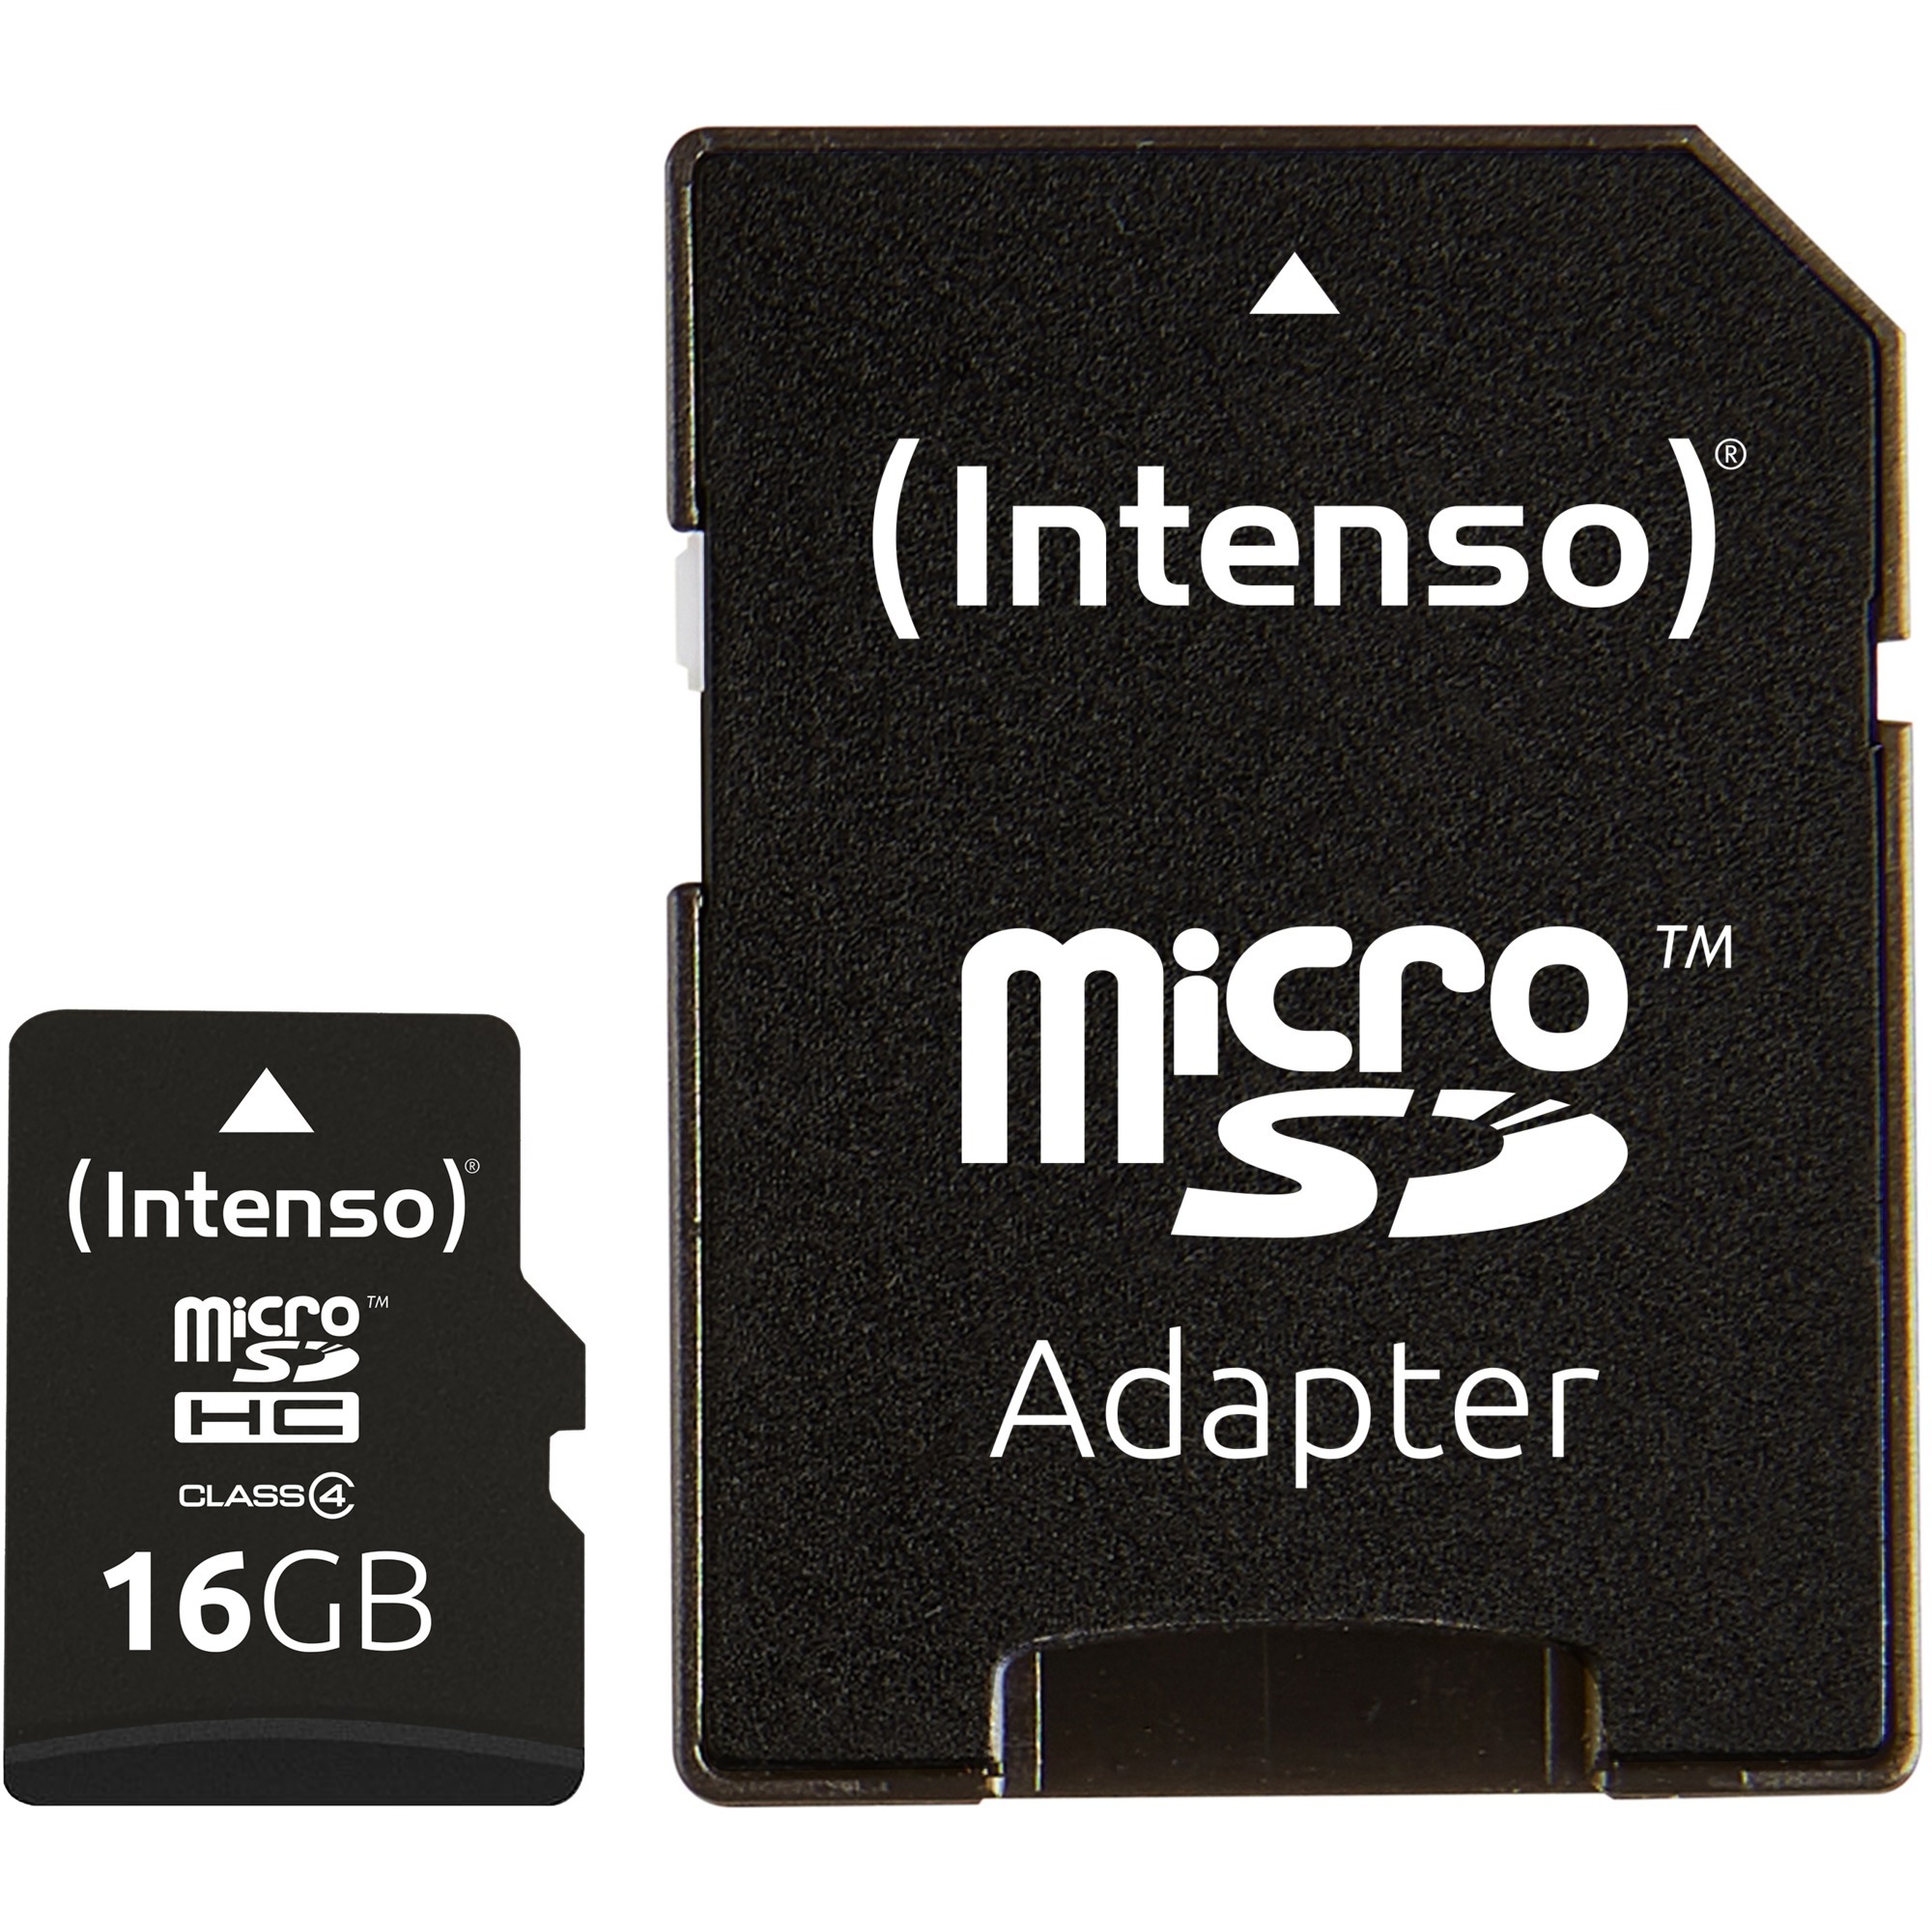 16GB Micro SDHC Class 4 pamięć flash MicroSDHC Klasa 4, Karty pamięci